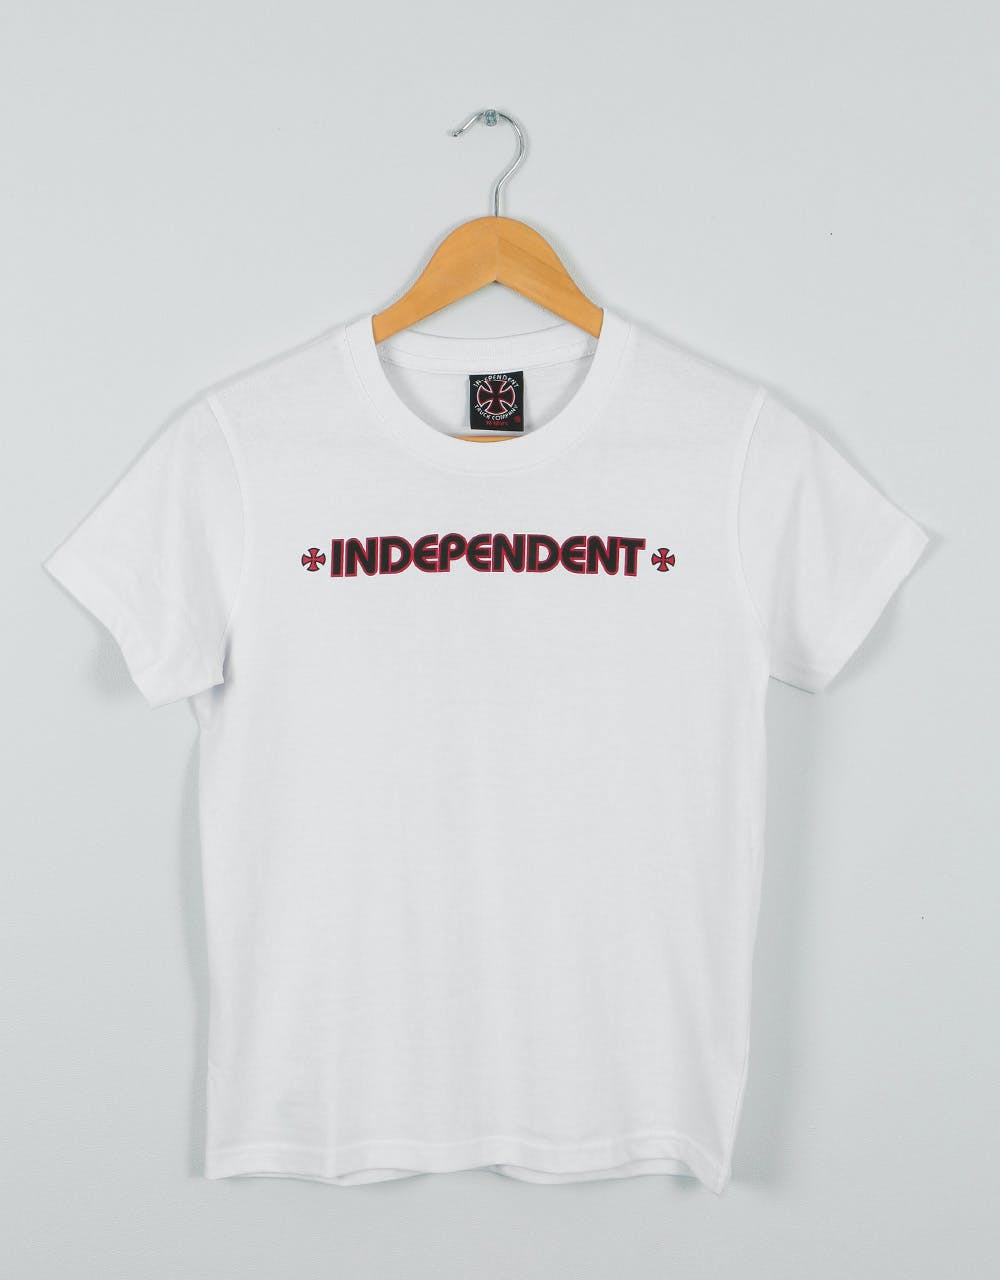 Independent Bar Cross Kids T-Shirt - White